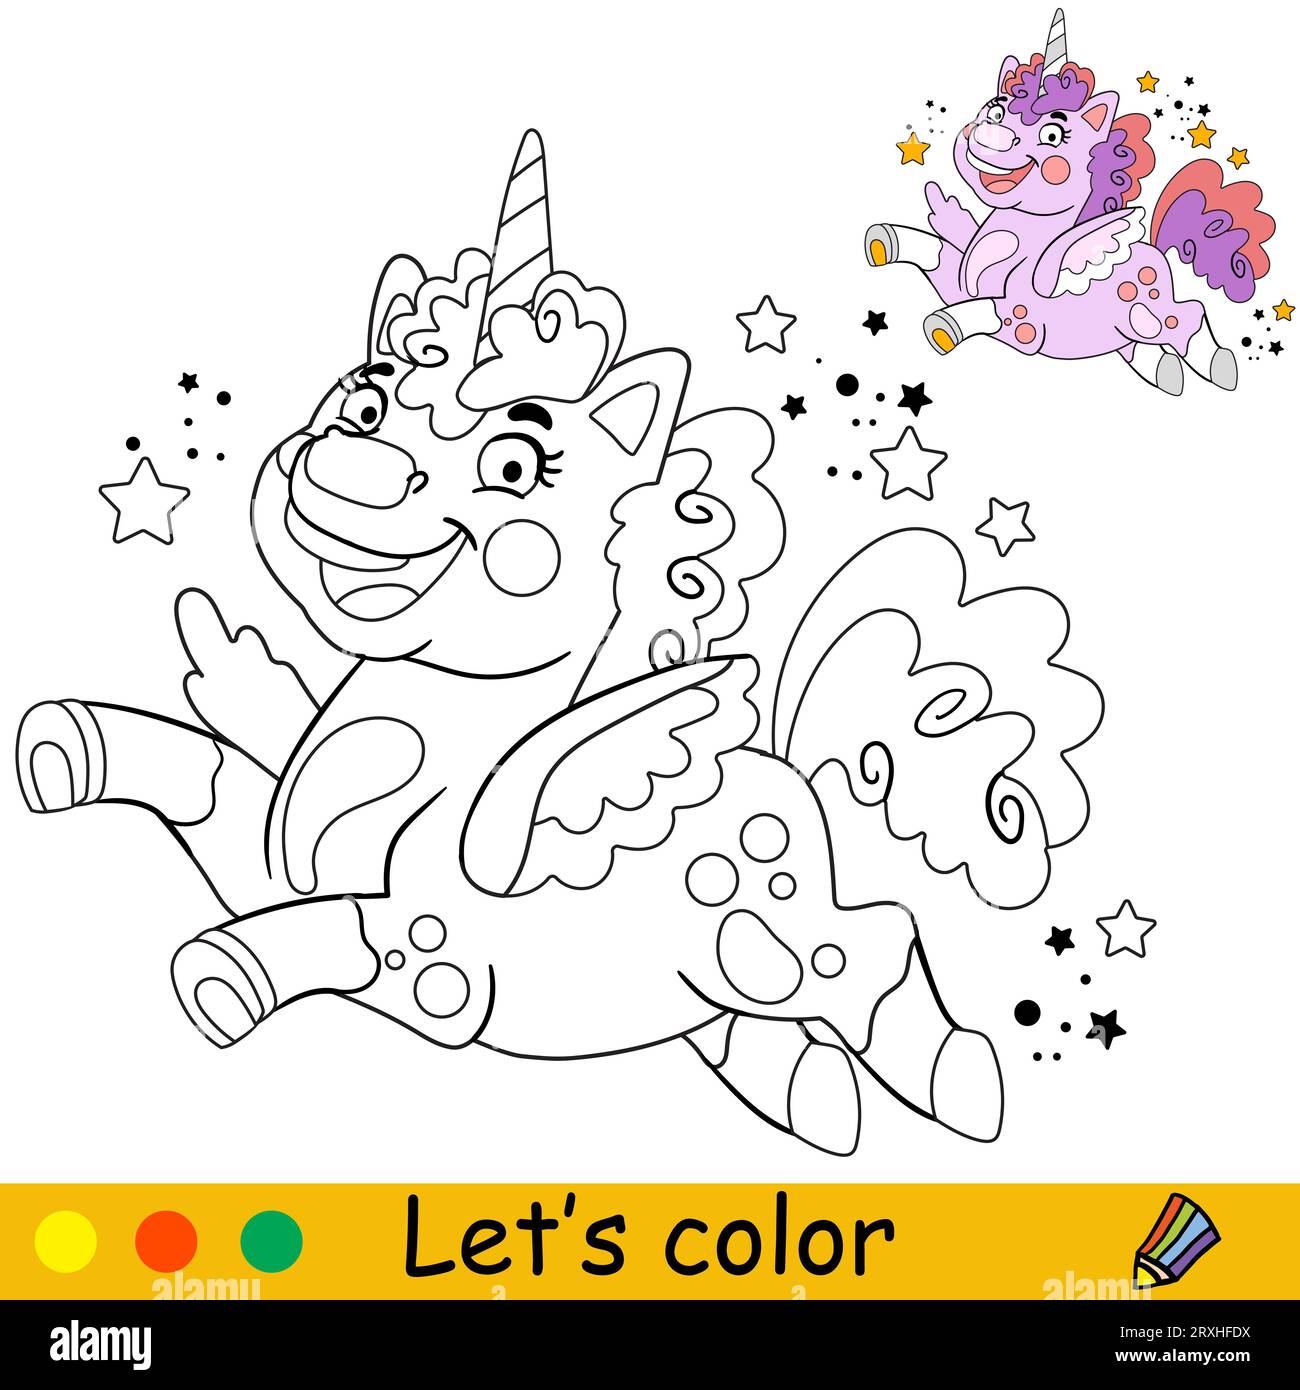 Cartoni animati unicorno soffice con sfondo astratto. Pagina di libri da colorare per bambini. Unicorn. Illustrazione vettoriale isolata in bianco e nero con co Illustrazione Vettoriale